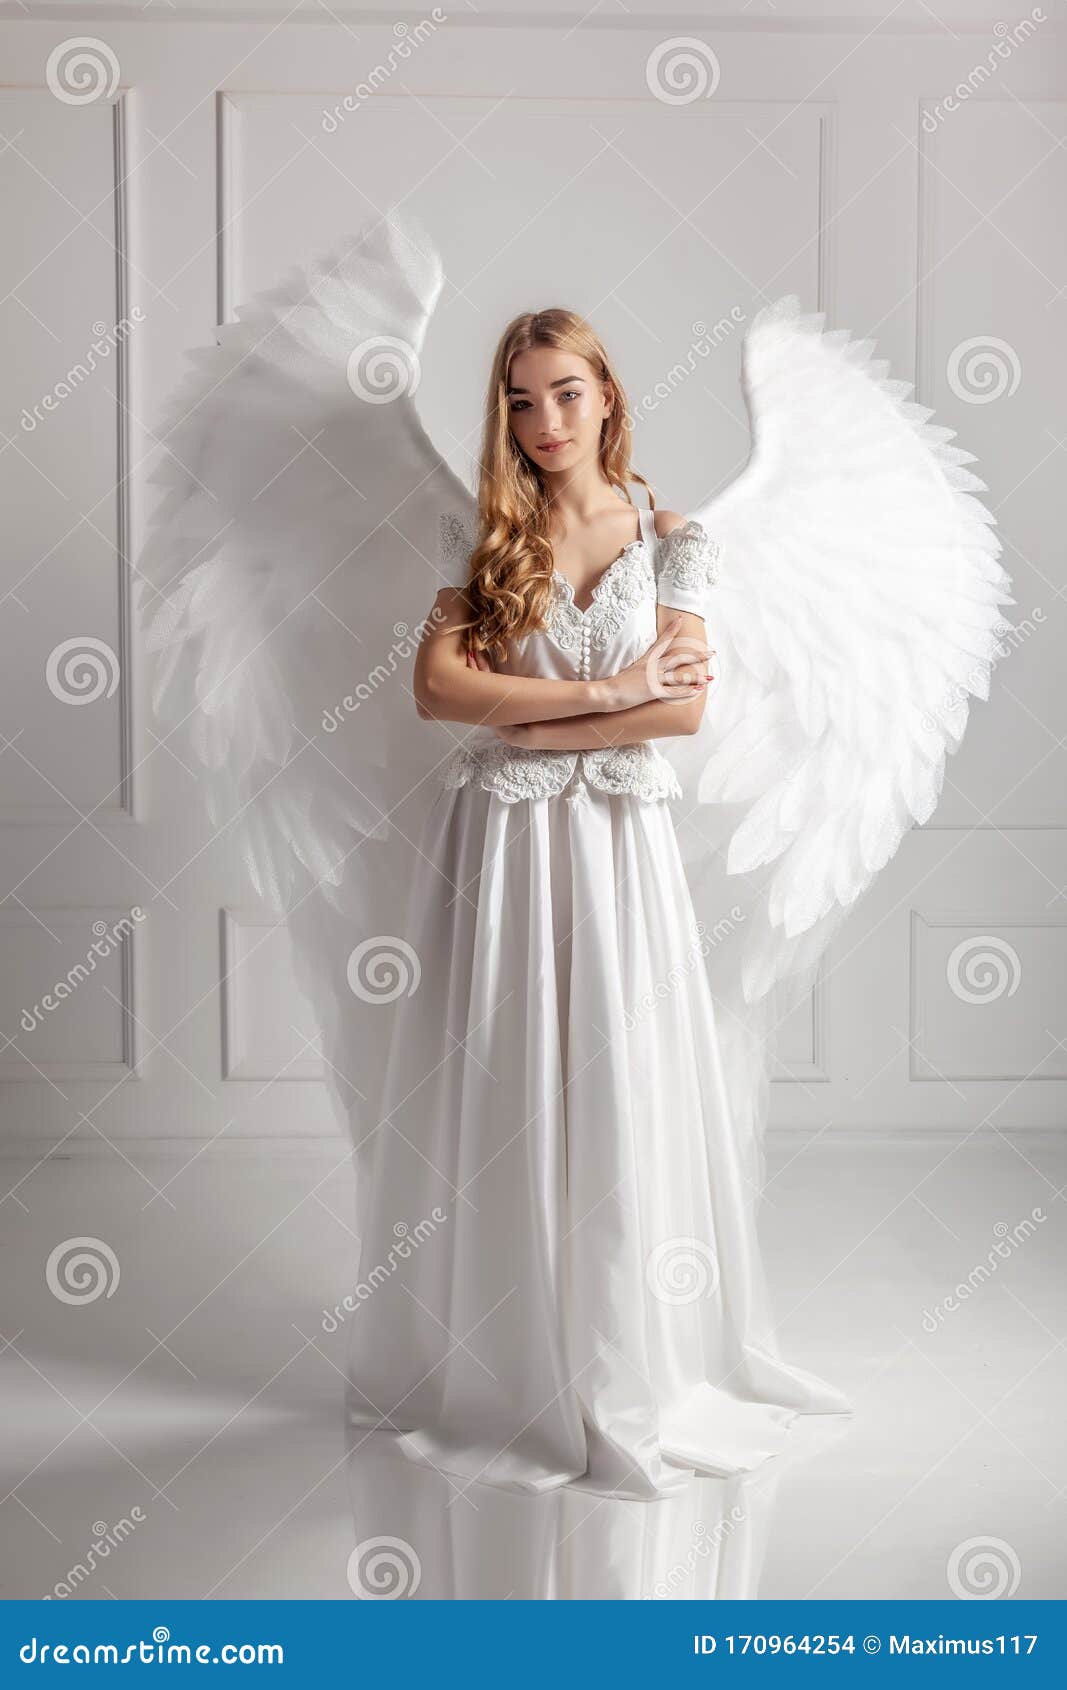 Buy > angel dress girl > in stock